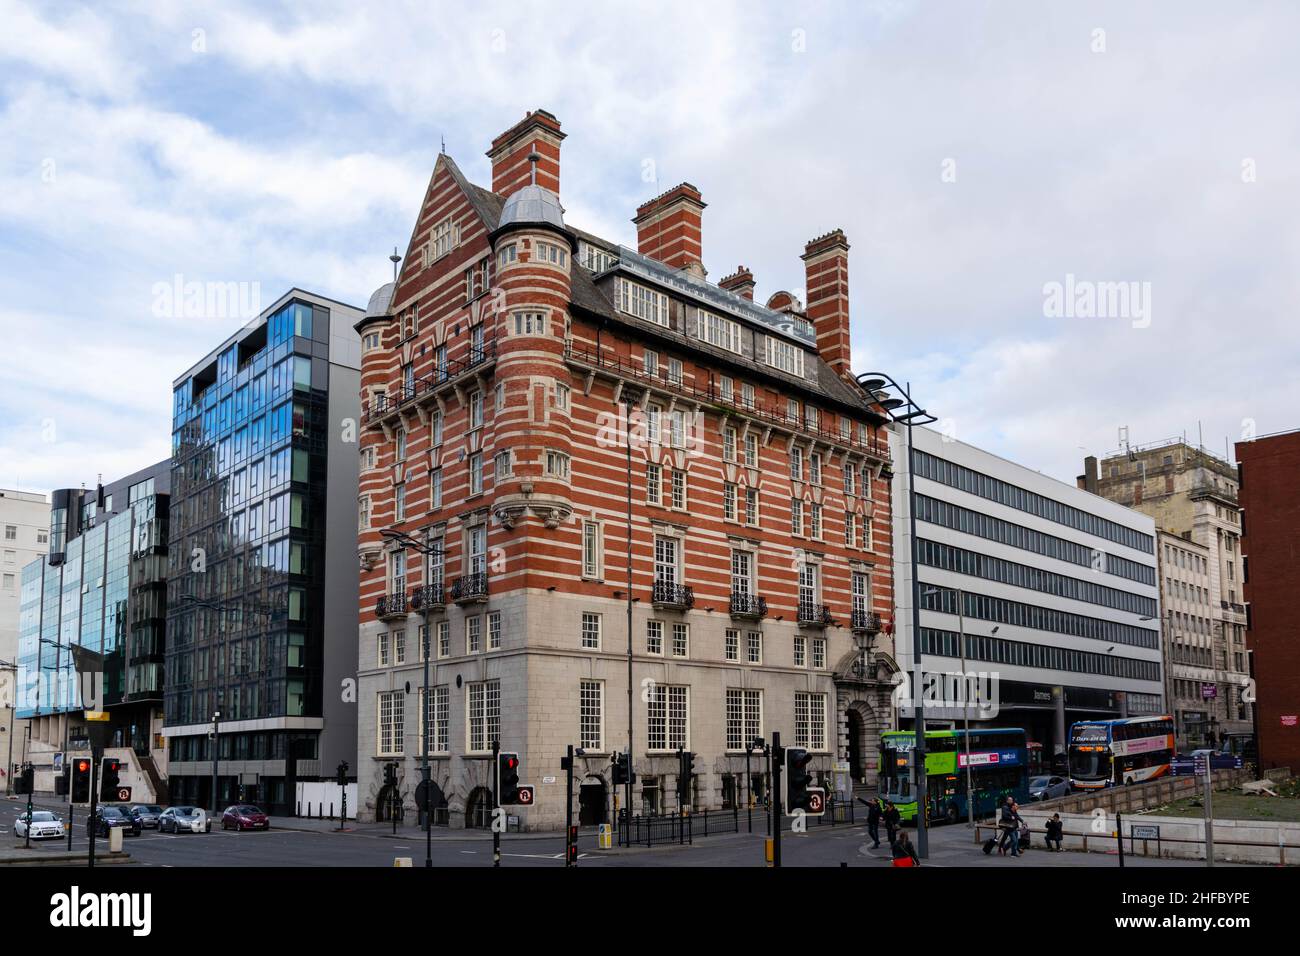 Liverpool, Großbritannien - 6. Januar 2020: Das Albion House, auch bekannt als 30 James Street und White Star Building, ist ein einzigartiges rot-weiß gestreifte Bürogebäude Stockfoto